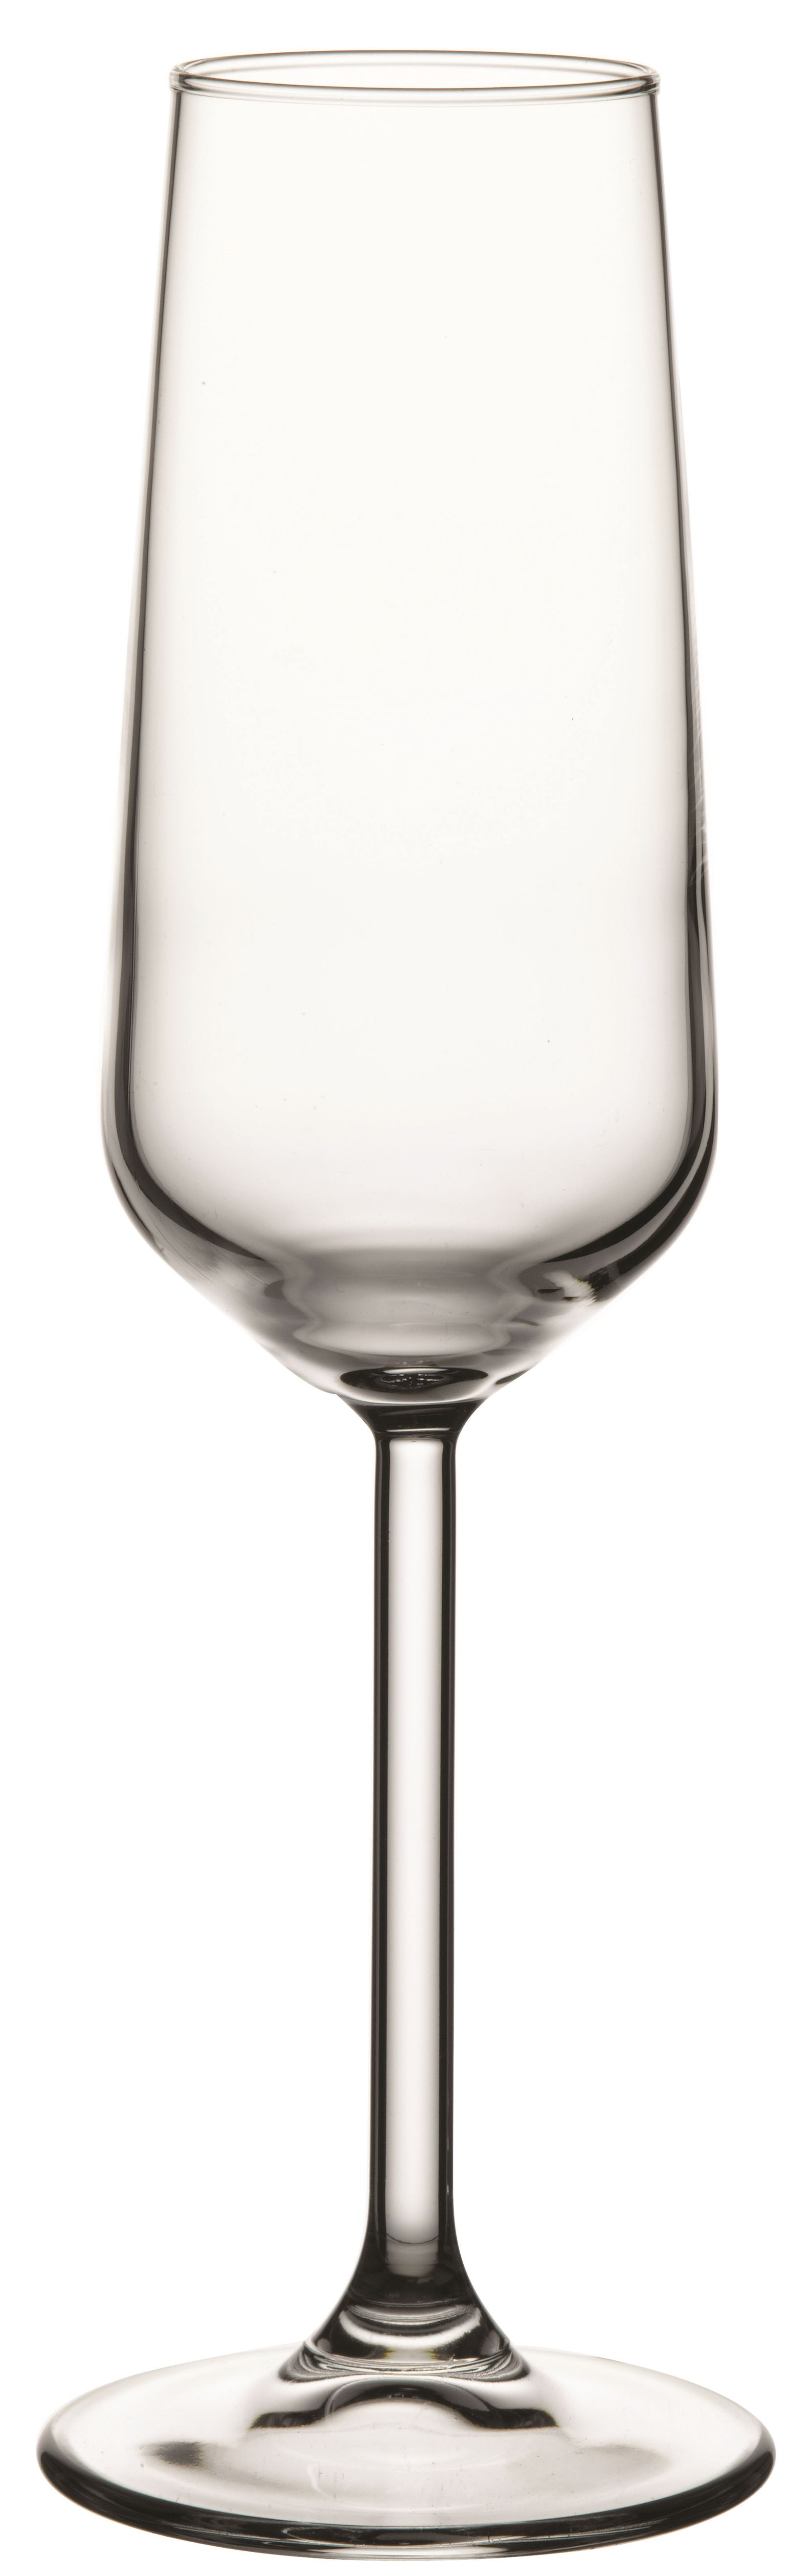 Champagnerkelch Inhalt 0,195 Liter, Serie Allegra, aus Glas